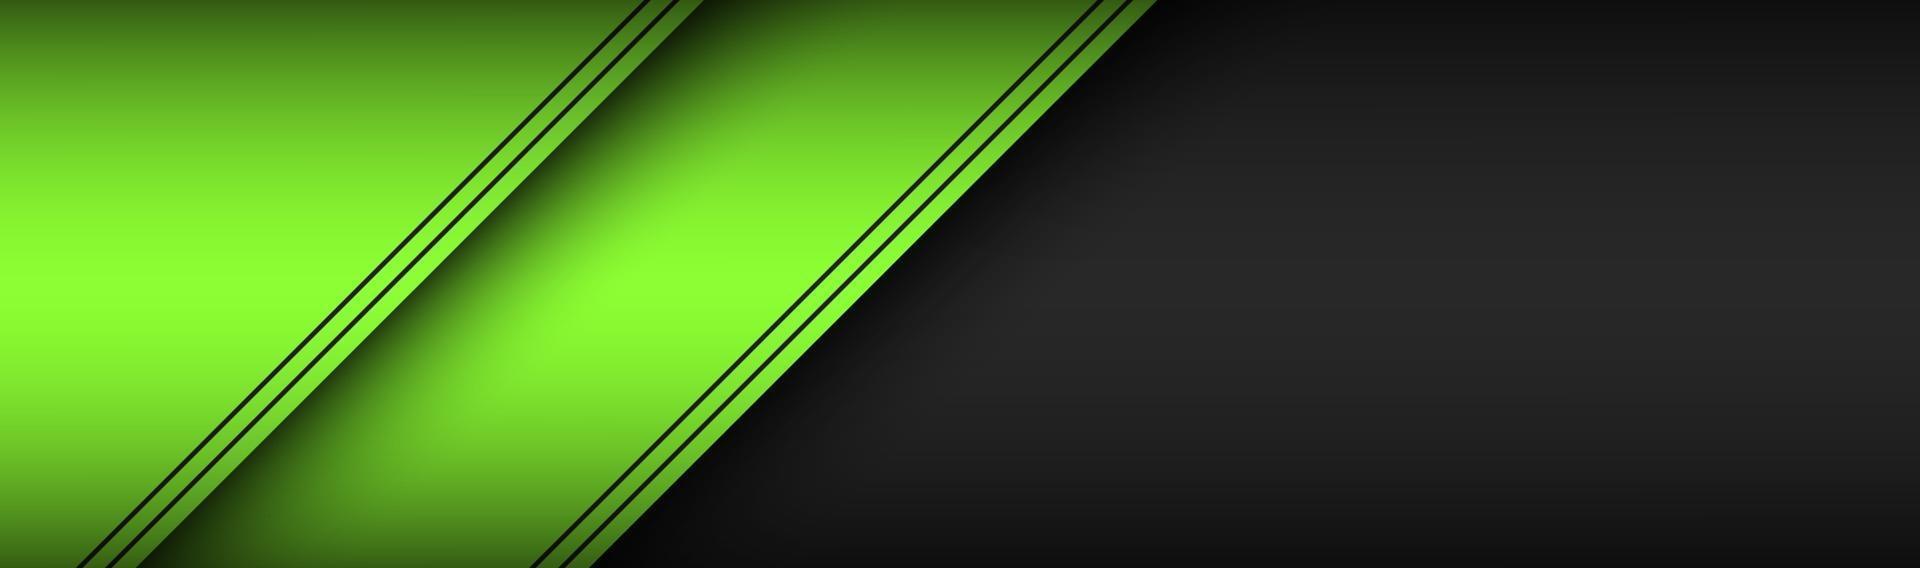 materiale nero e verde design intestazione tecnologia moderna banner con fogli di carta sovrapposti con linee nere widescreen illustrazione vettoriale